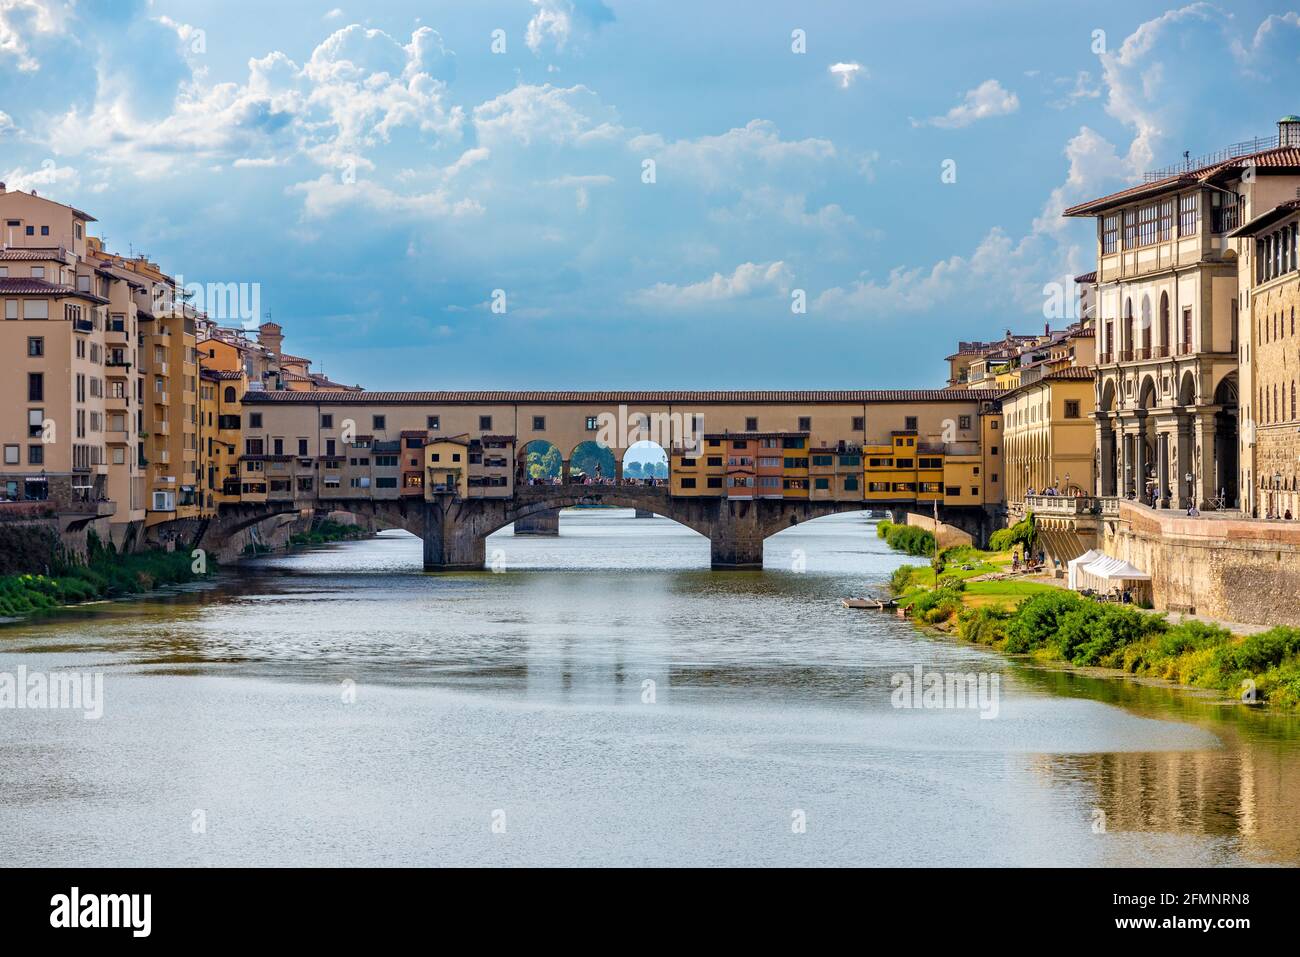 FIRENZE, ITALIA - 24 ago 2020: Firenze, Toscana/Italia - 24.08.2020: Il ponte 'Ponte Vecchio' di Firenze fotografato esattamente frontalmente Foto Stock